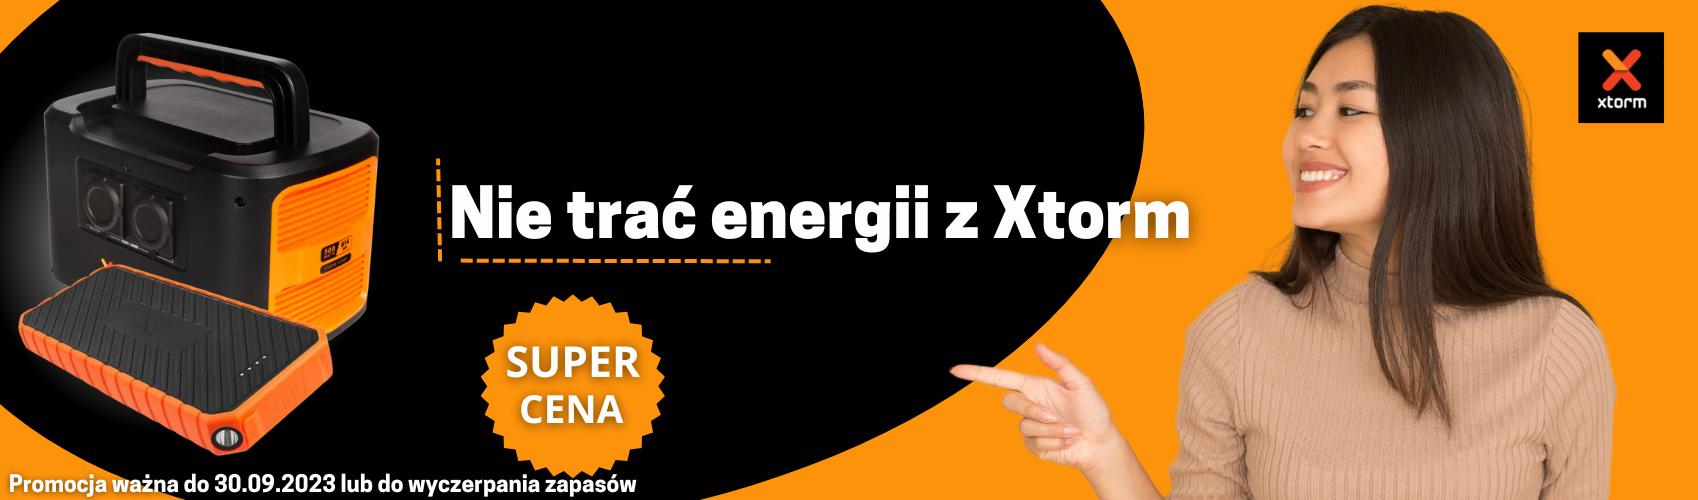 Nie trać energii z Xtorm! Sprawdź unikalną promocje na powerbanki (i nie tylko!) stworzoną specjalnie dla Ciebie!